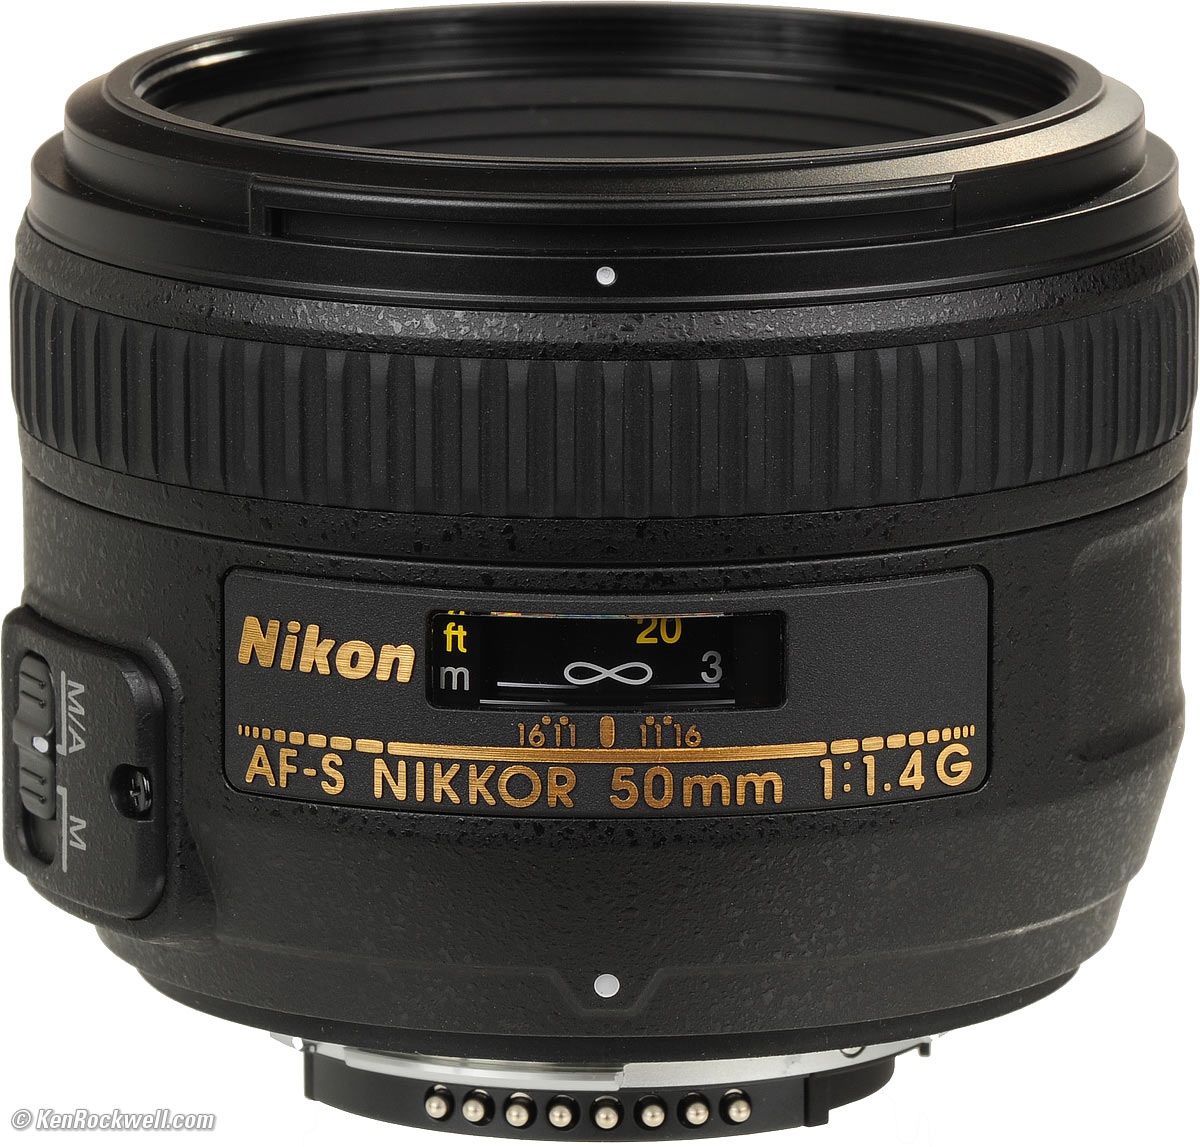 Nikon AFS 50mm f/1.4 G